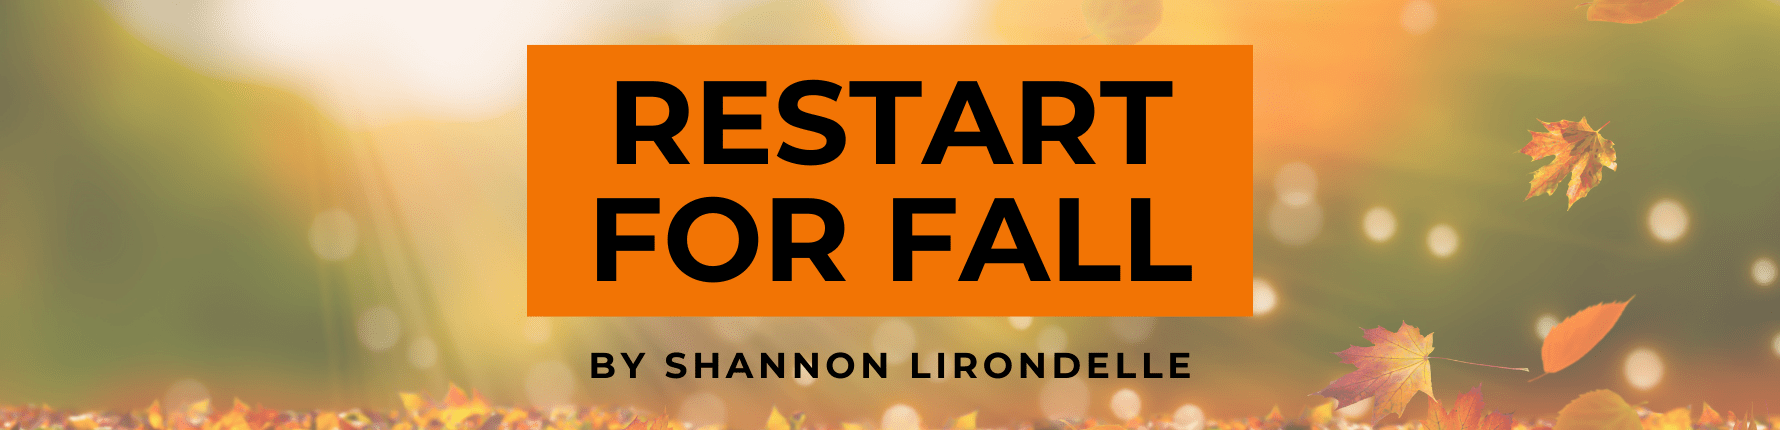 Restart for fall by Shannon Lirondelle